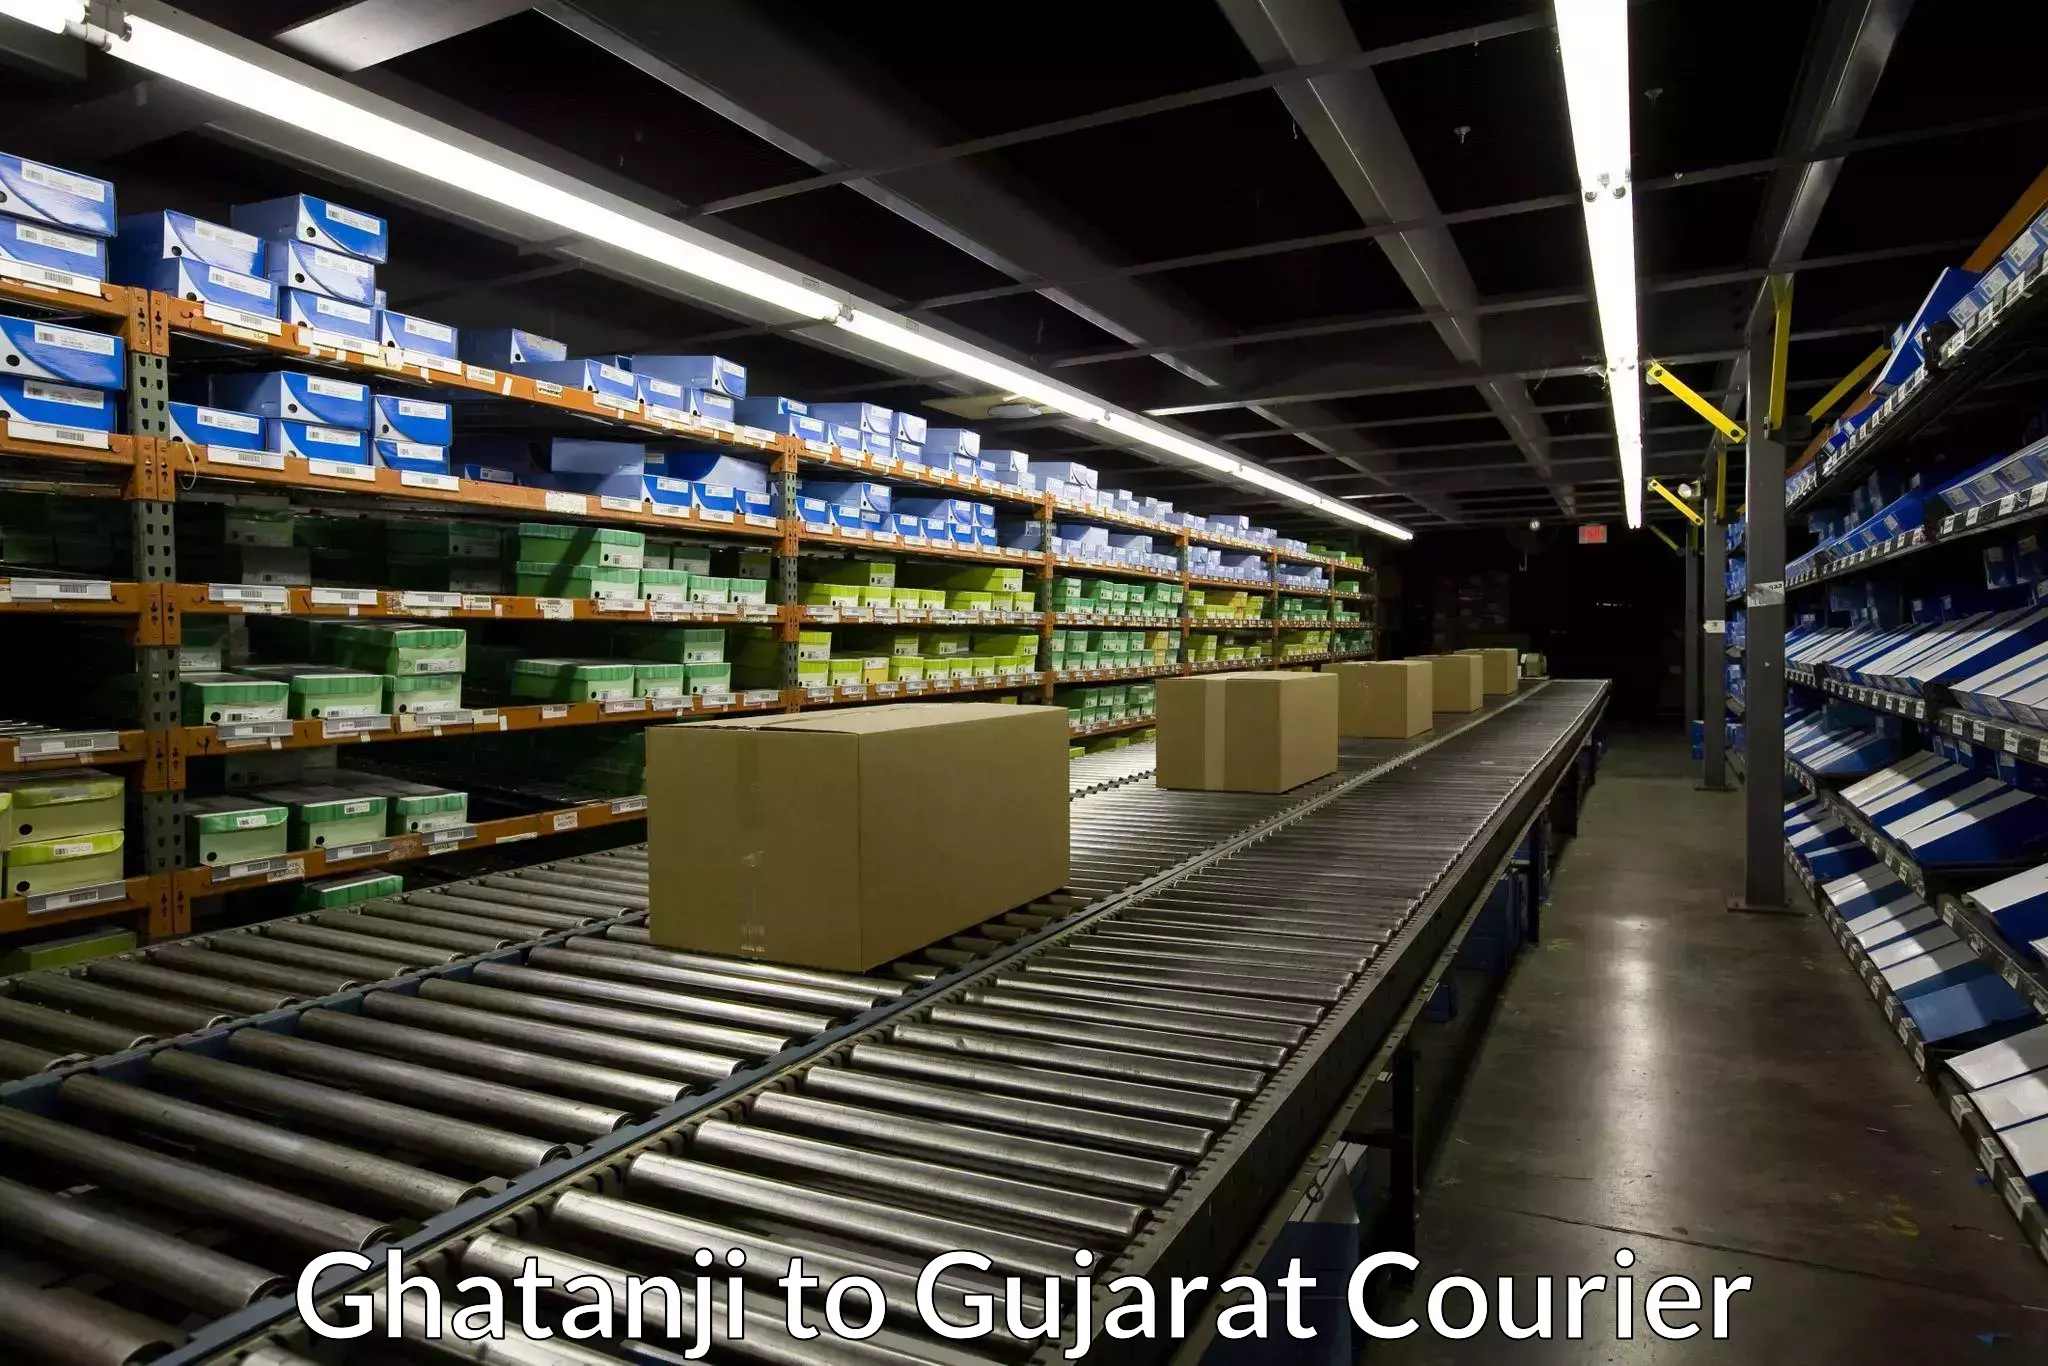 Flexible shipping options in Ghatanji to Gujarat